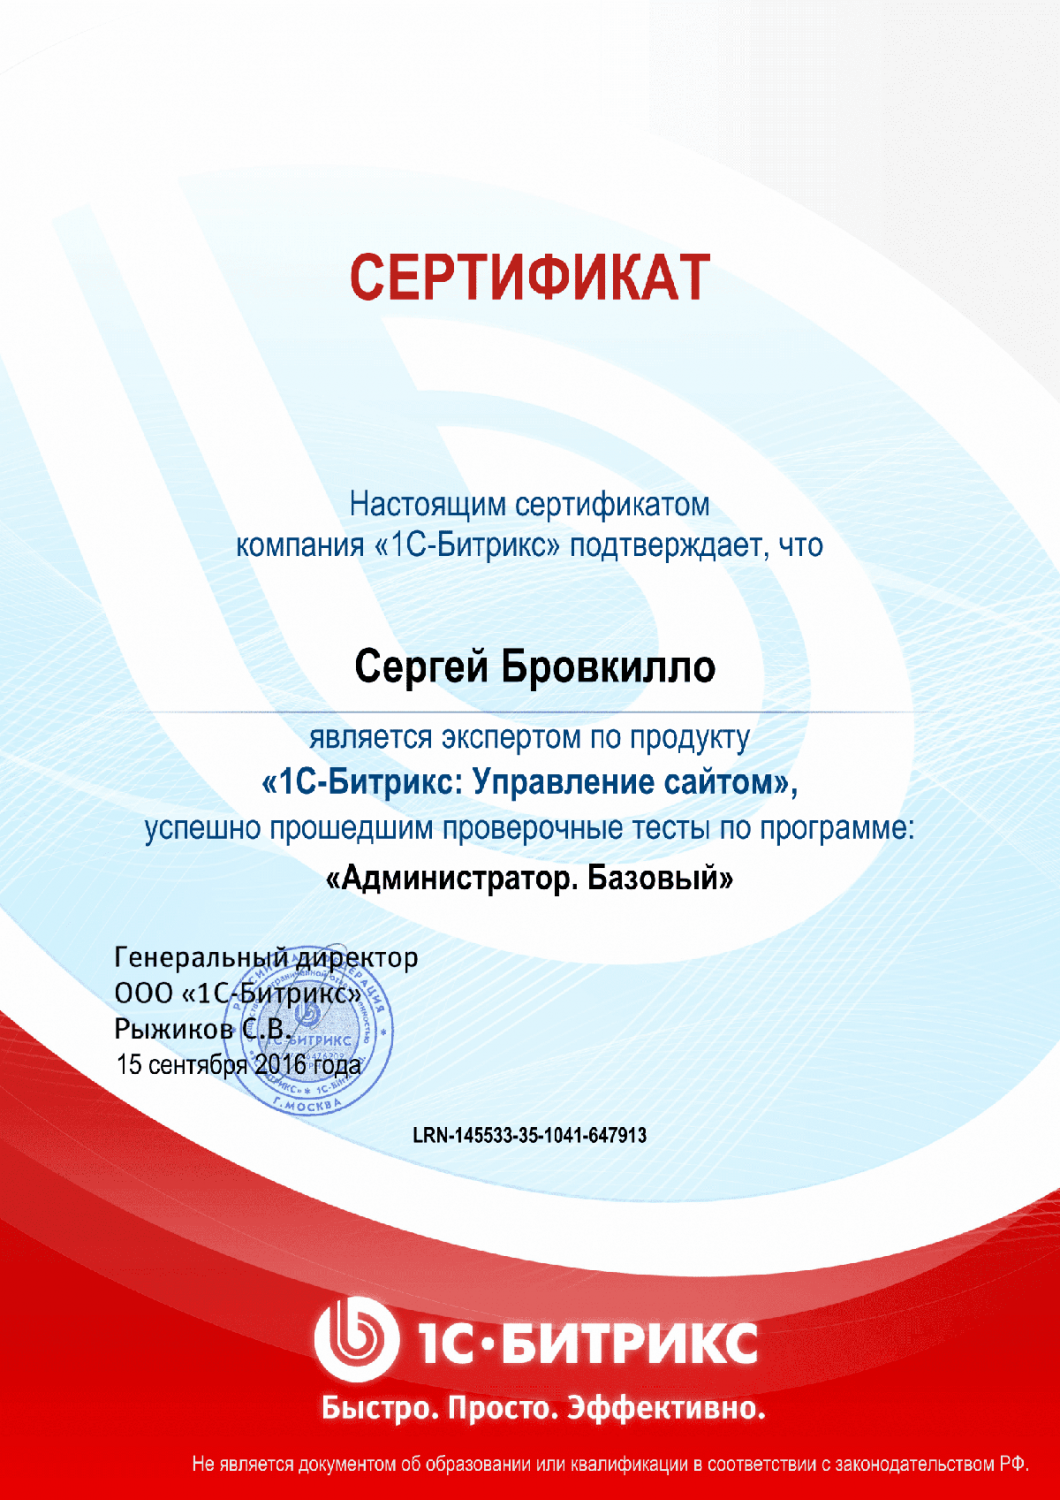 Сертификат эксперта по программе "Администратор. Базовый" в Архангельска